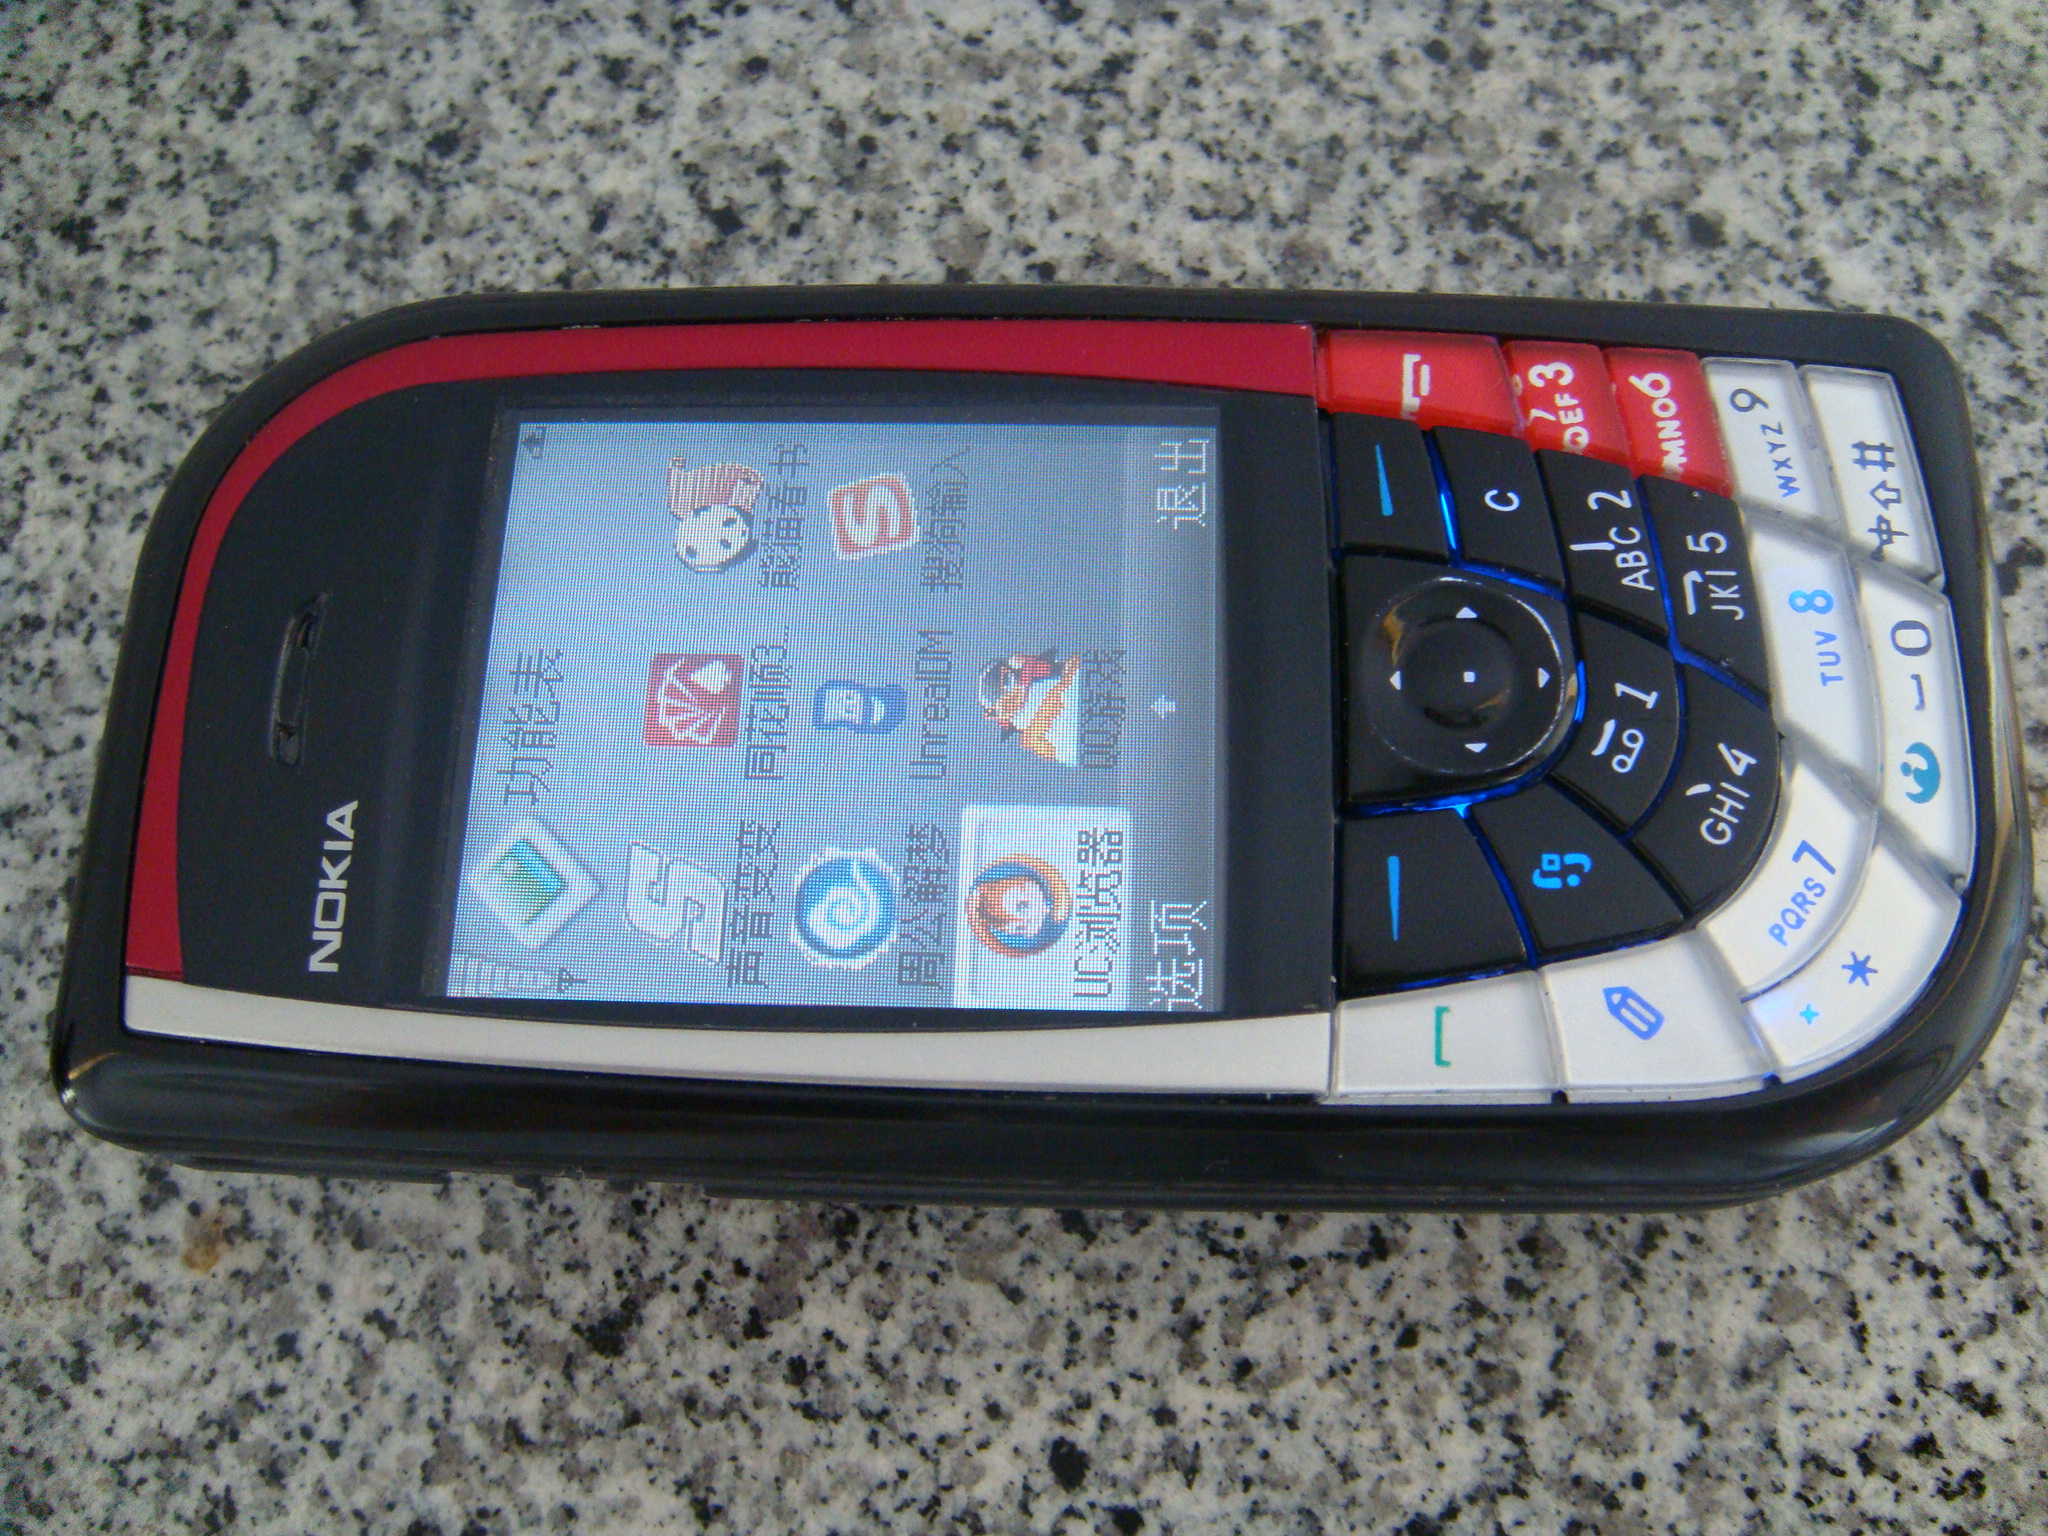 经典怀旧之Nokia7610：设计方案之高超无以伦比，红遍全球